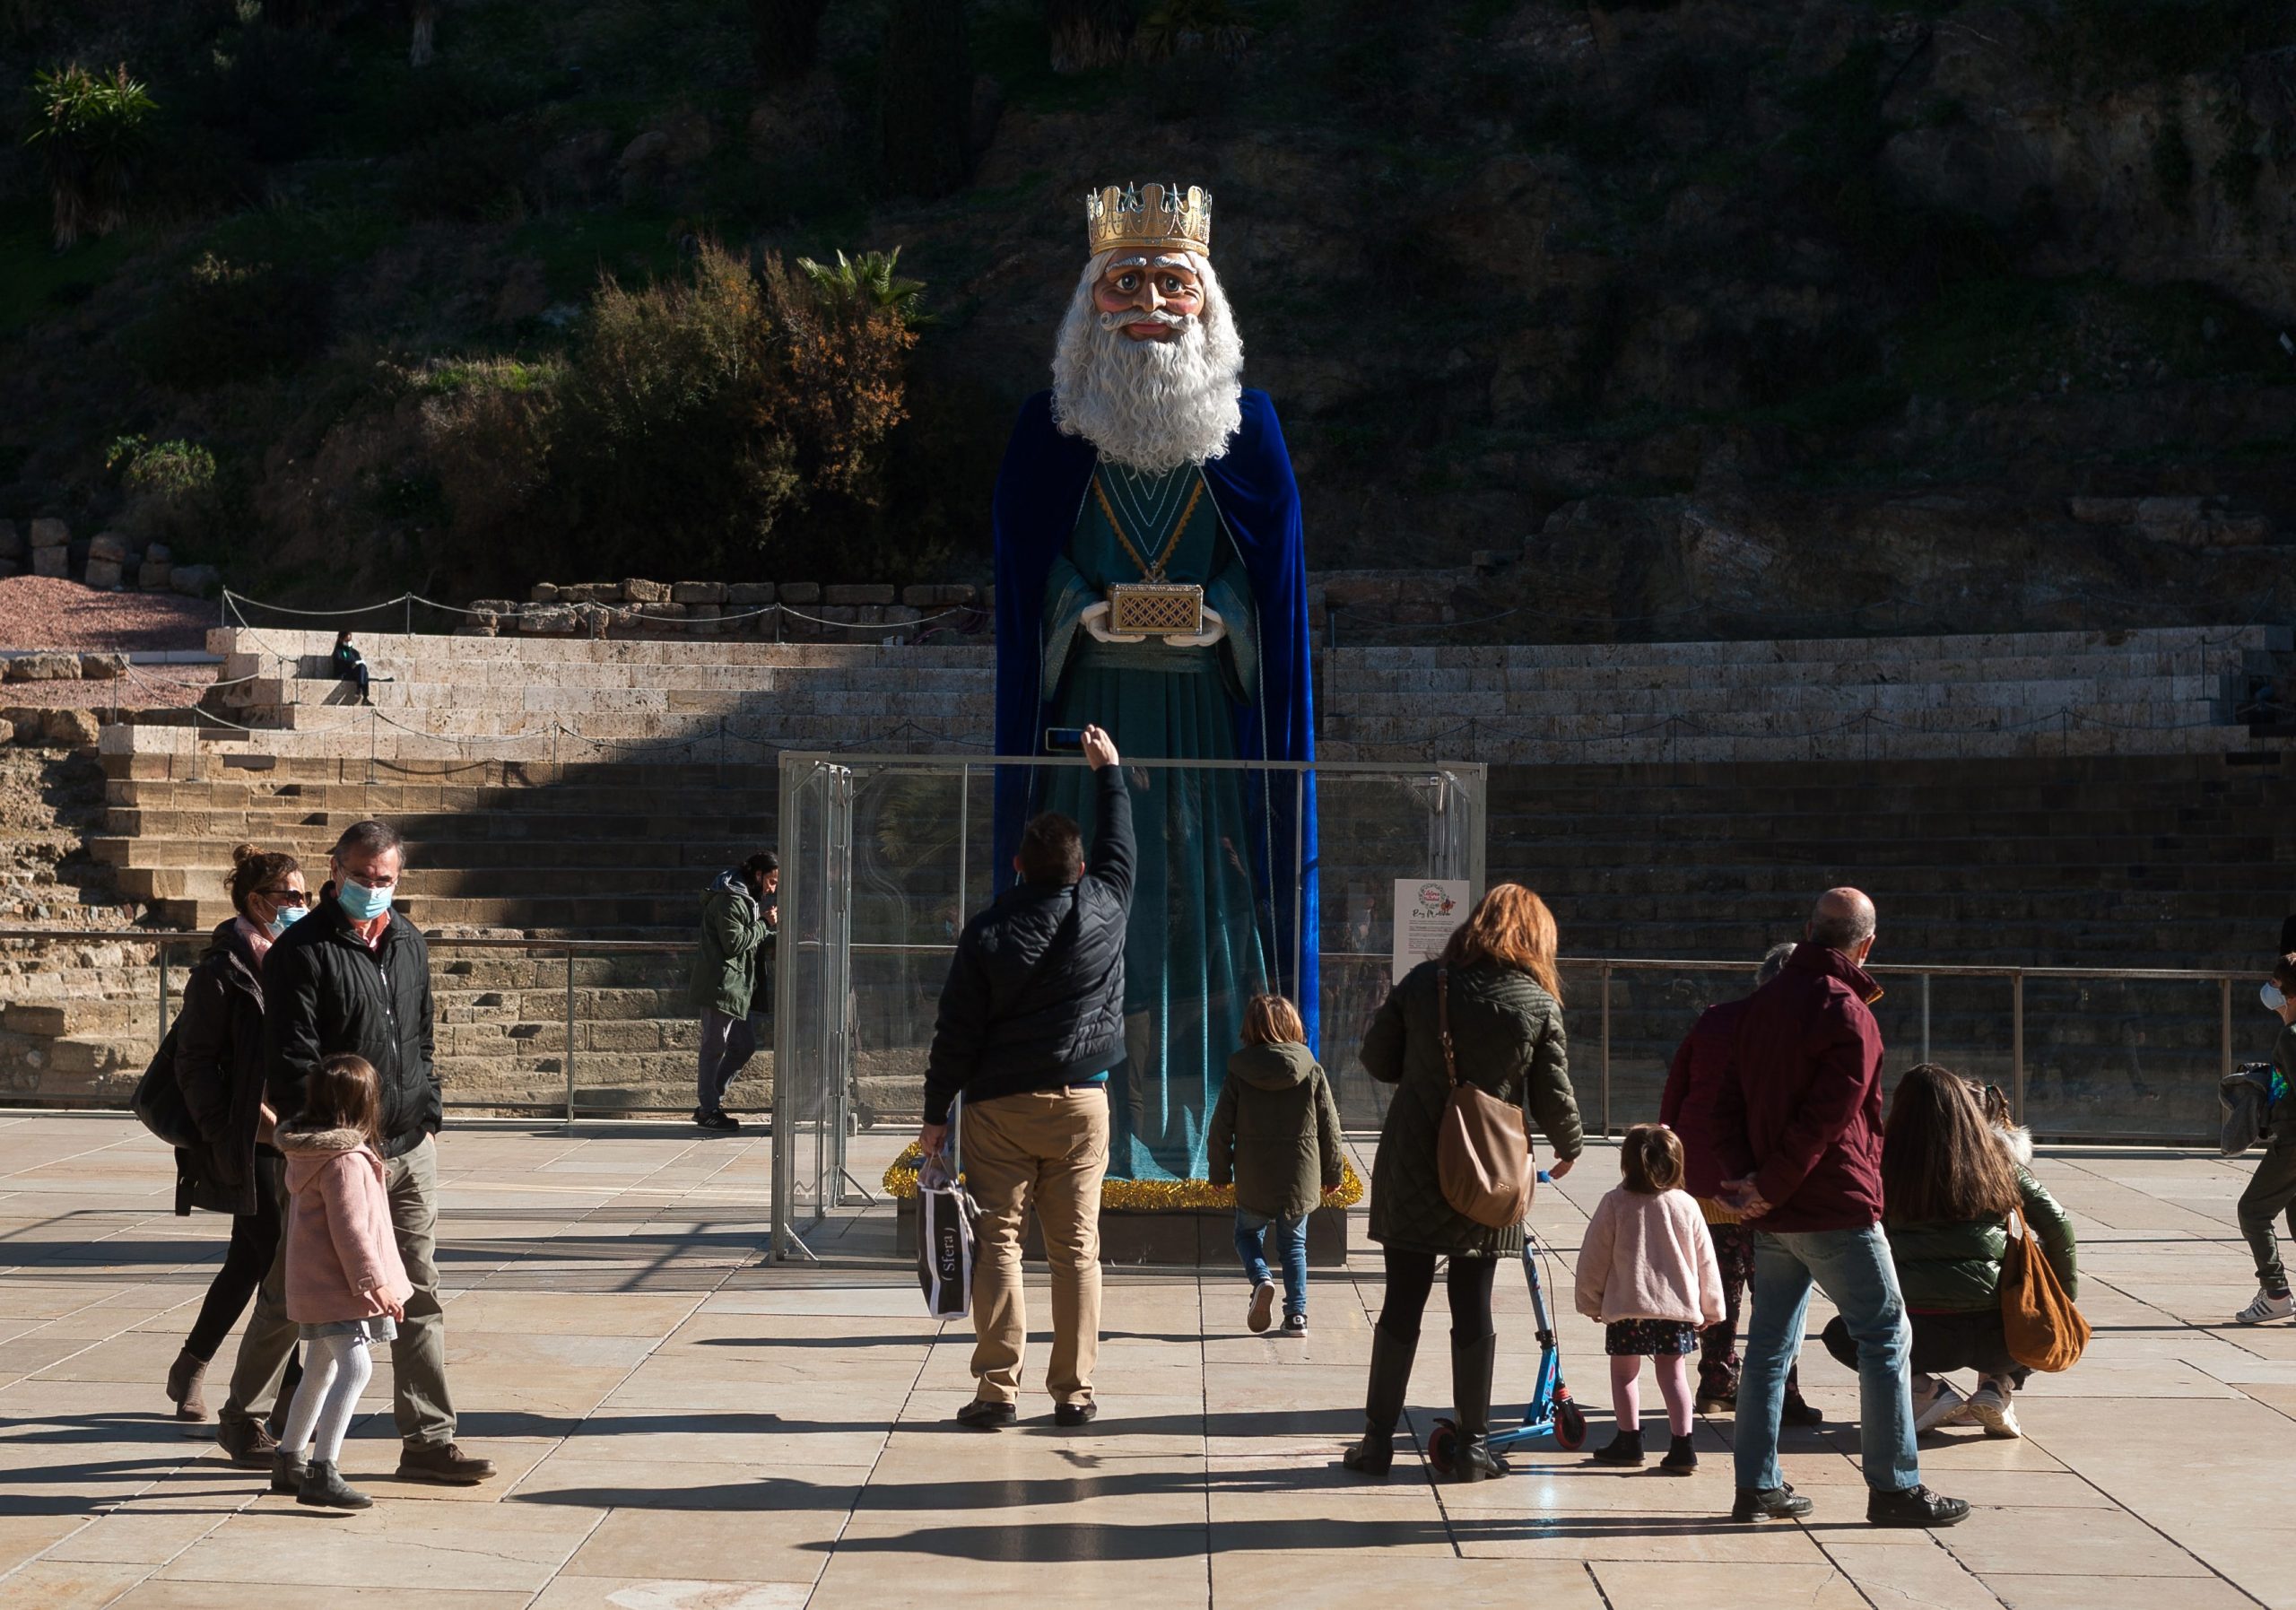 El Ayuntamiento De Málaga Ha Colocado En Calles Y Plazas Figuras Gigantes De Los Reyes Magos